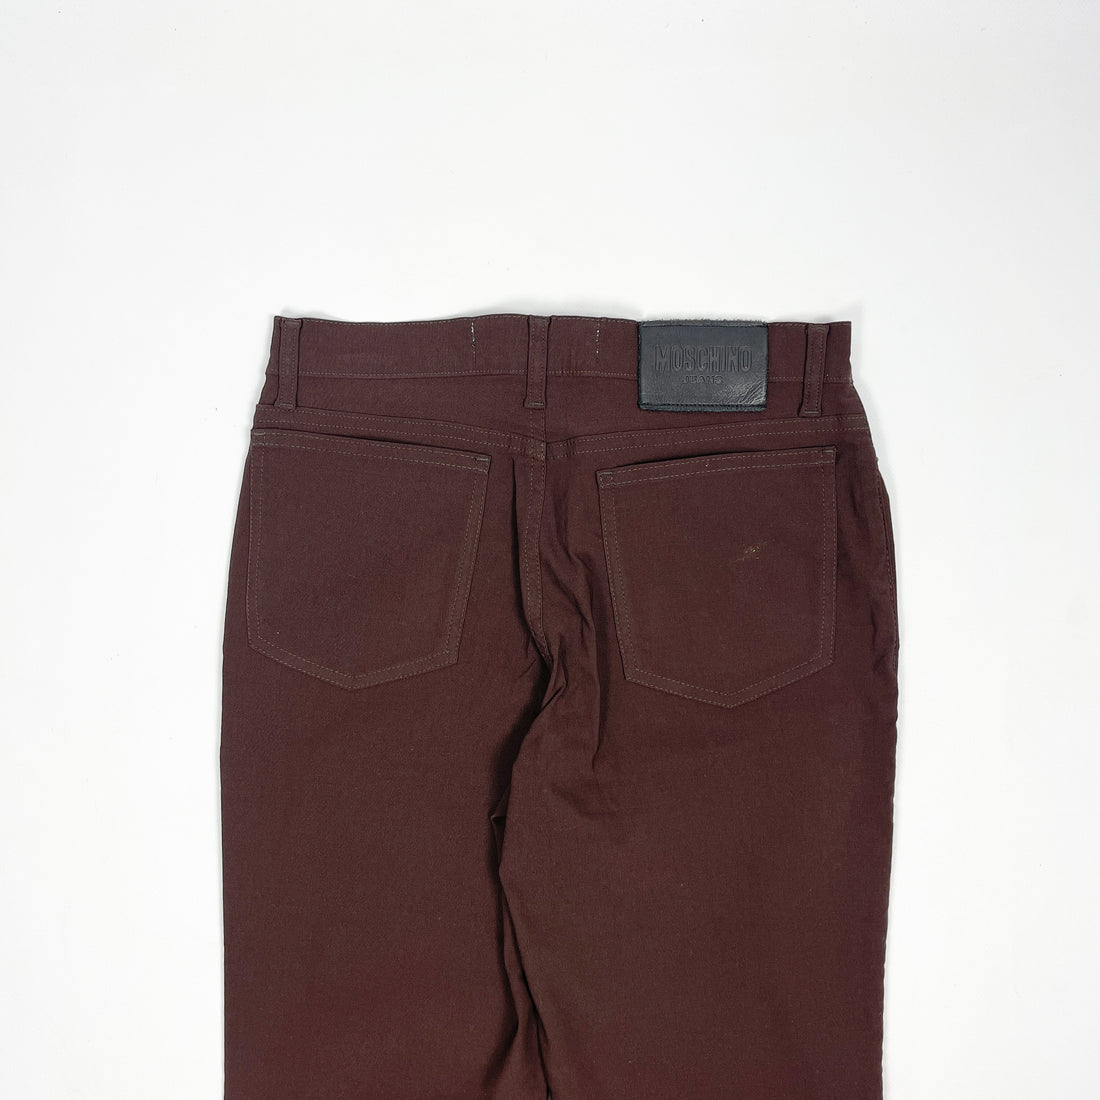 Moschino Dark Brown Pants 2000's